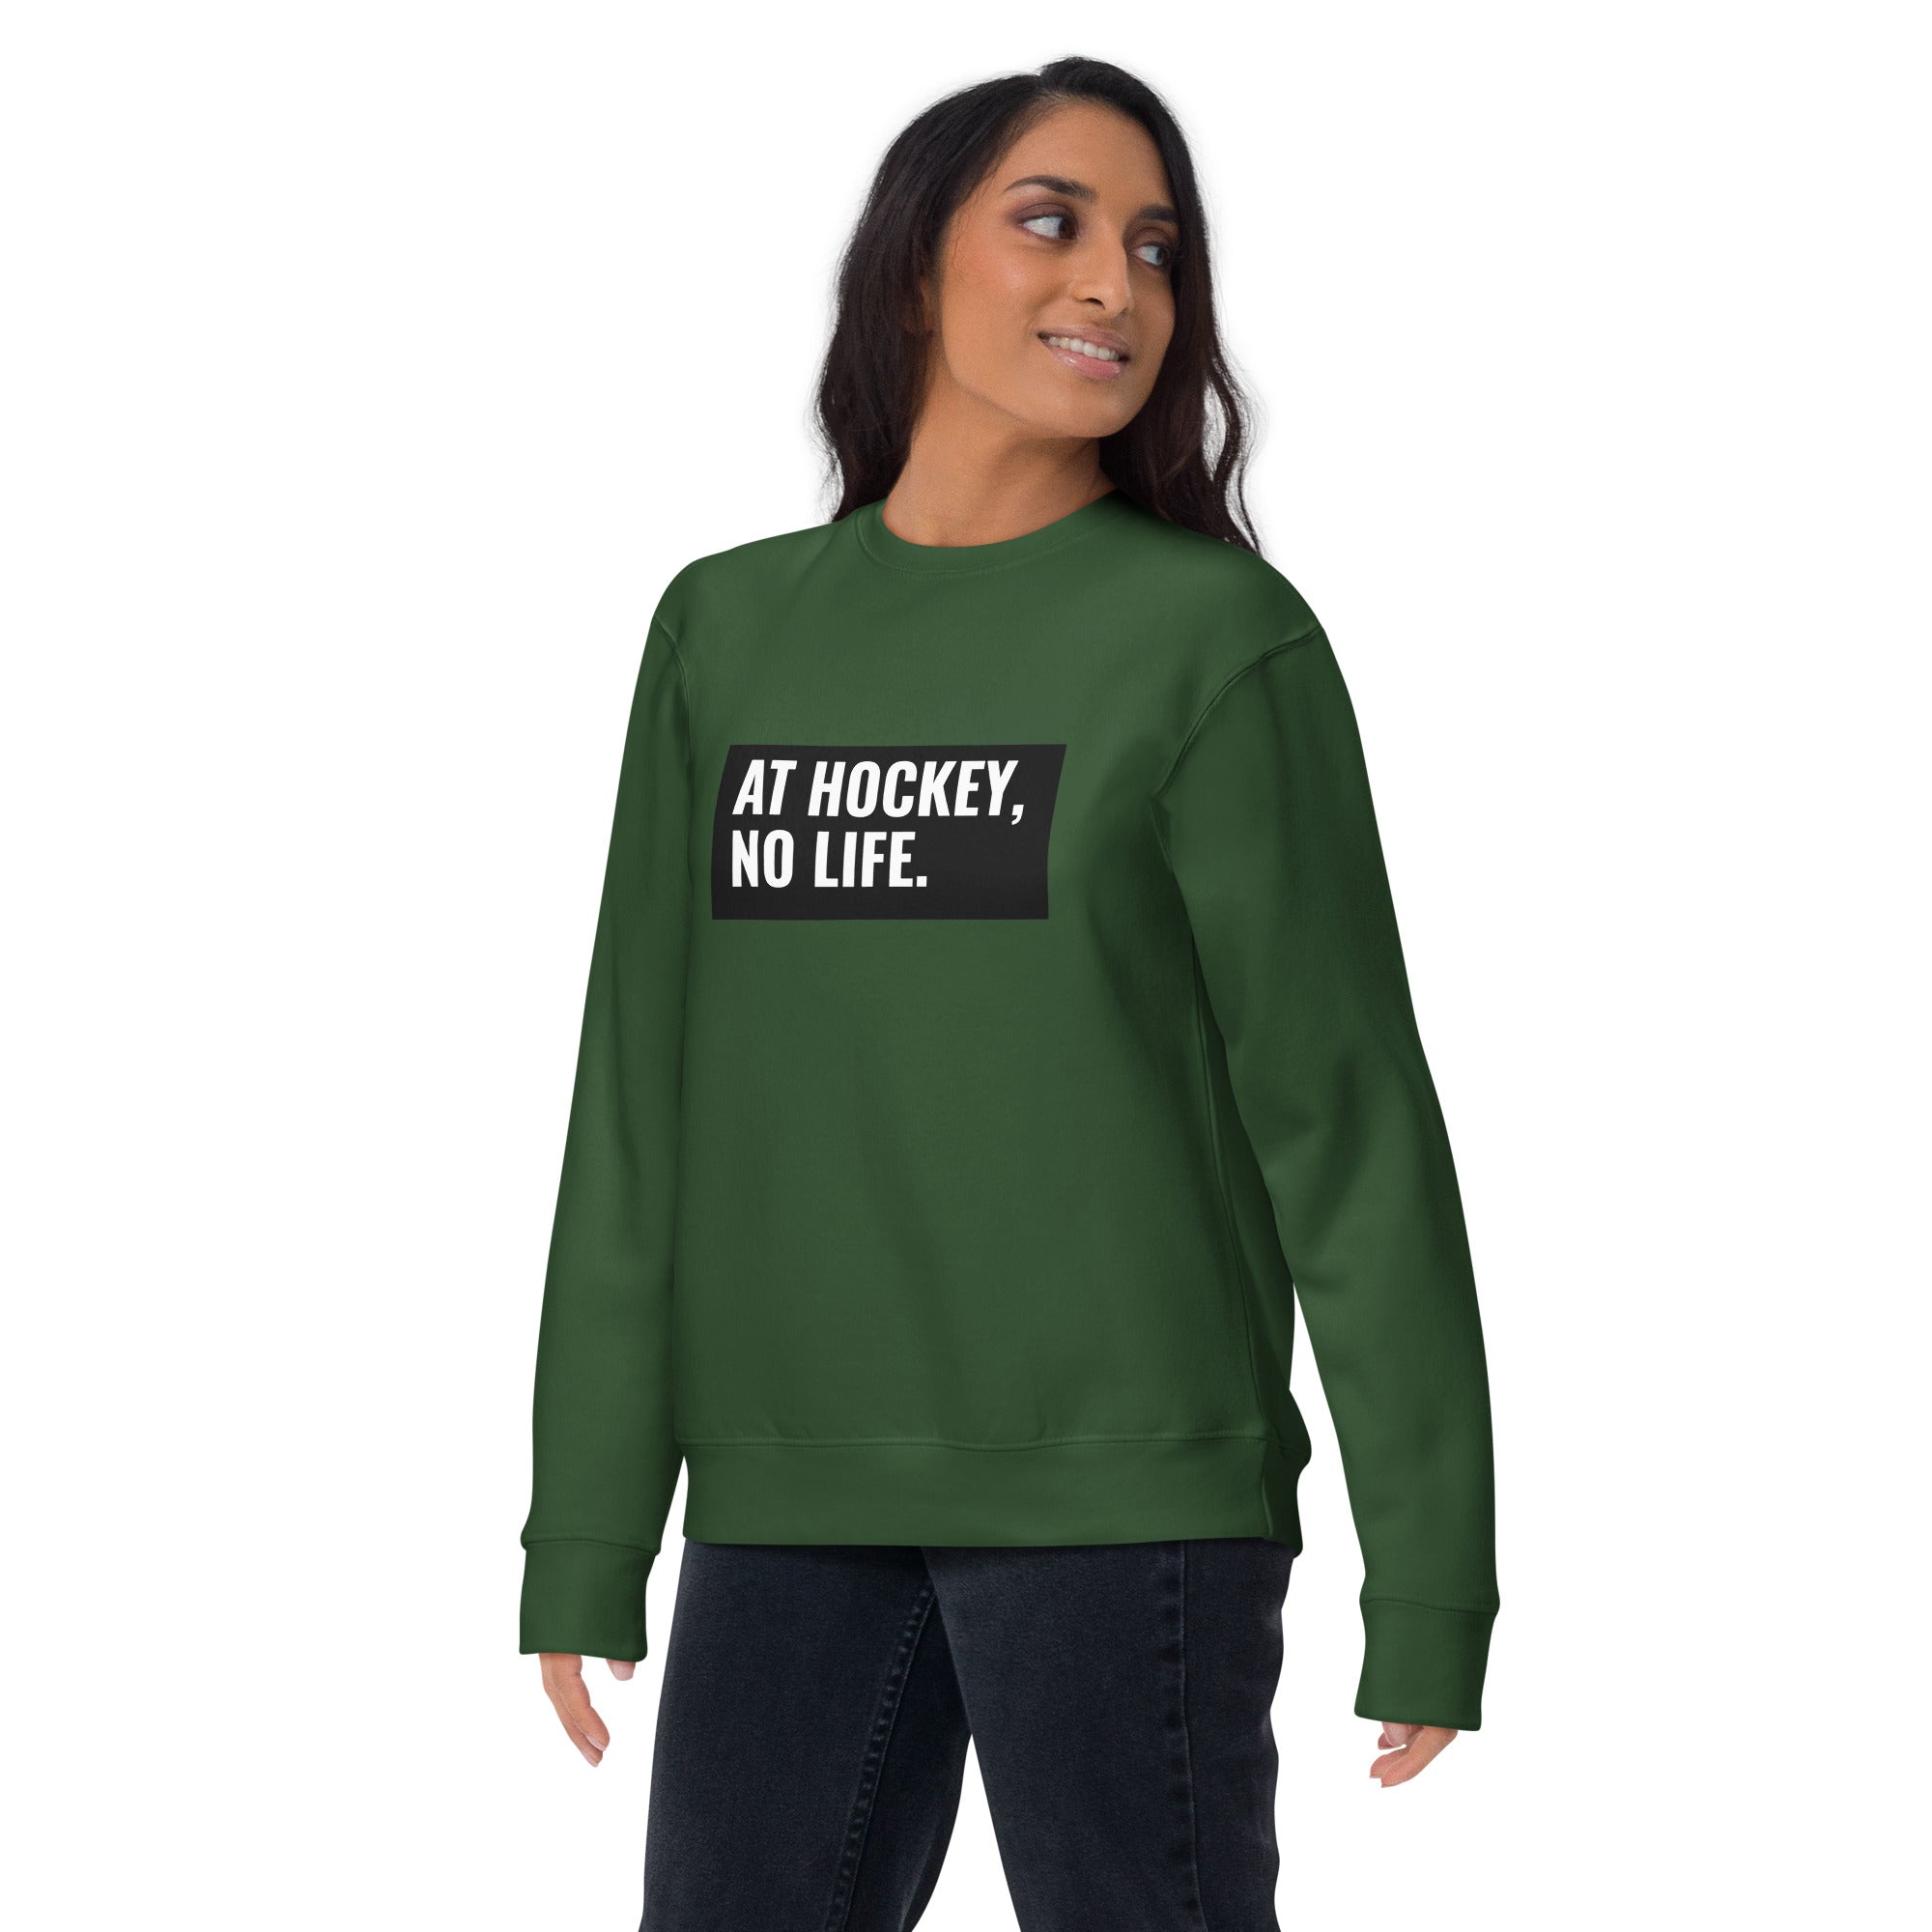 At Hockey, No Life Women's Premium Sweatshirt